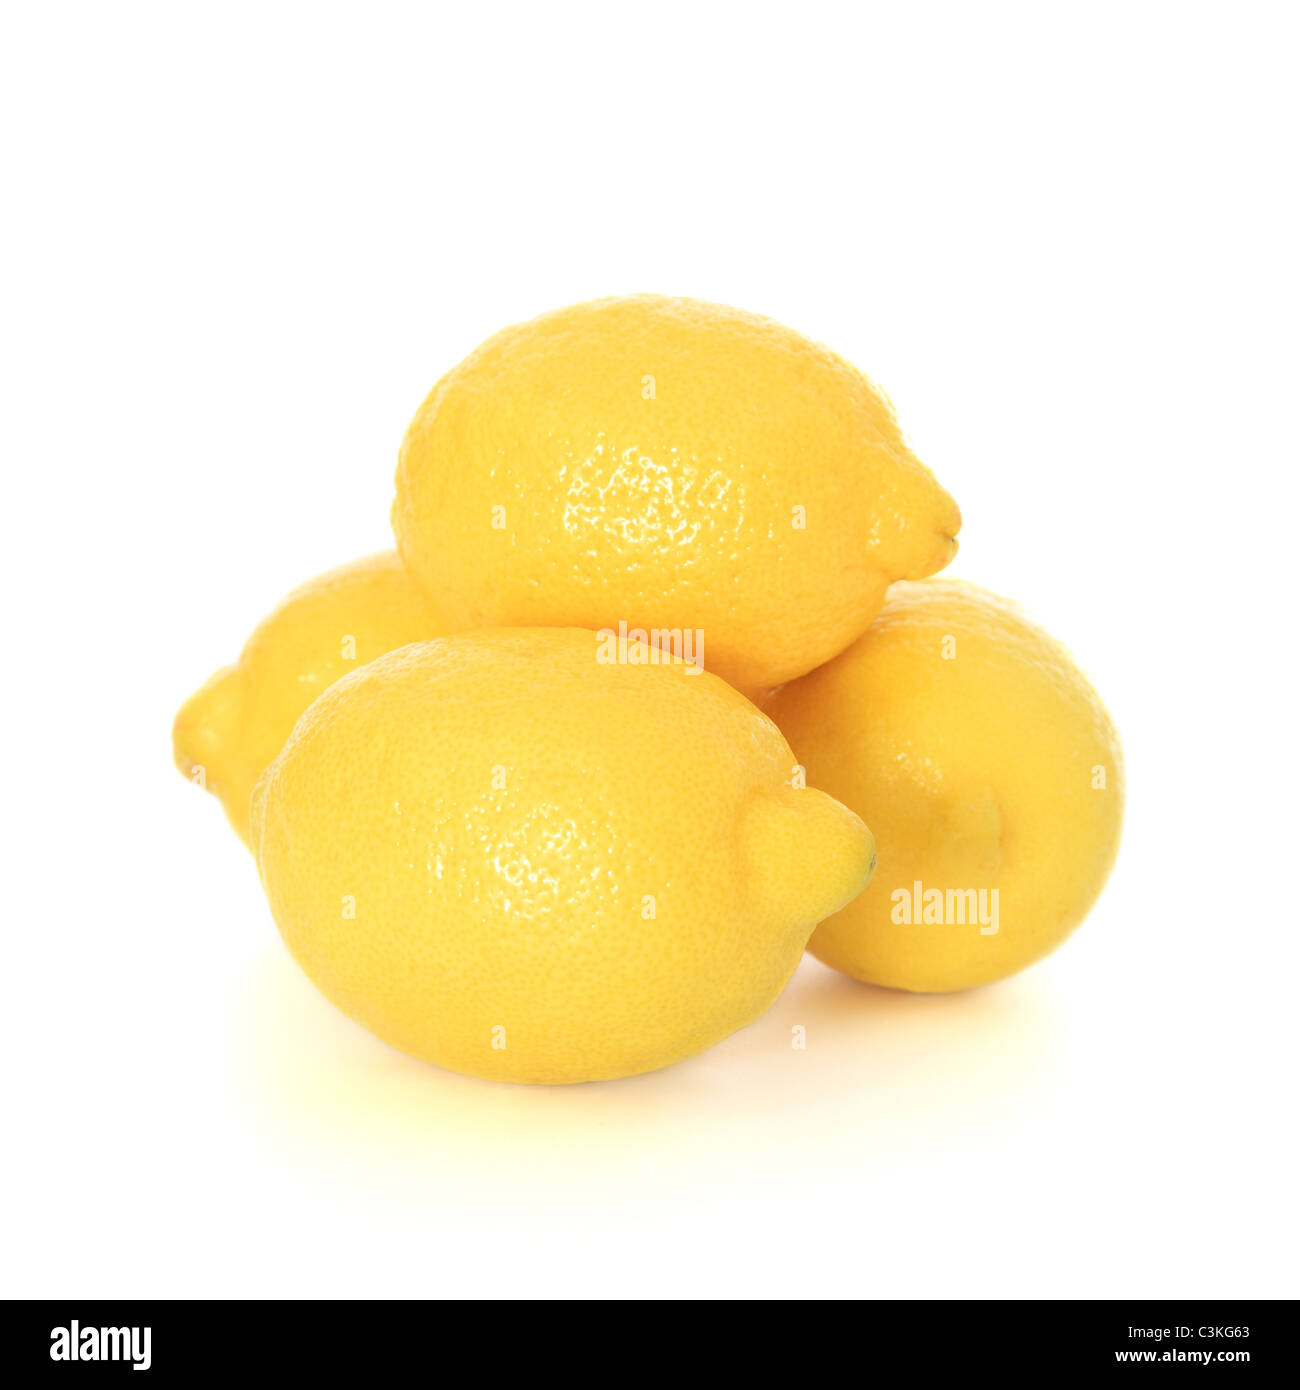 Fine ripe lemons. All on white background. Stock Photo